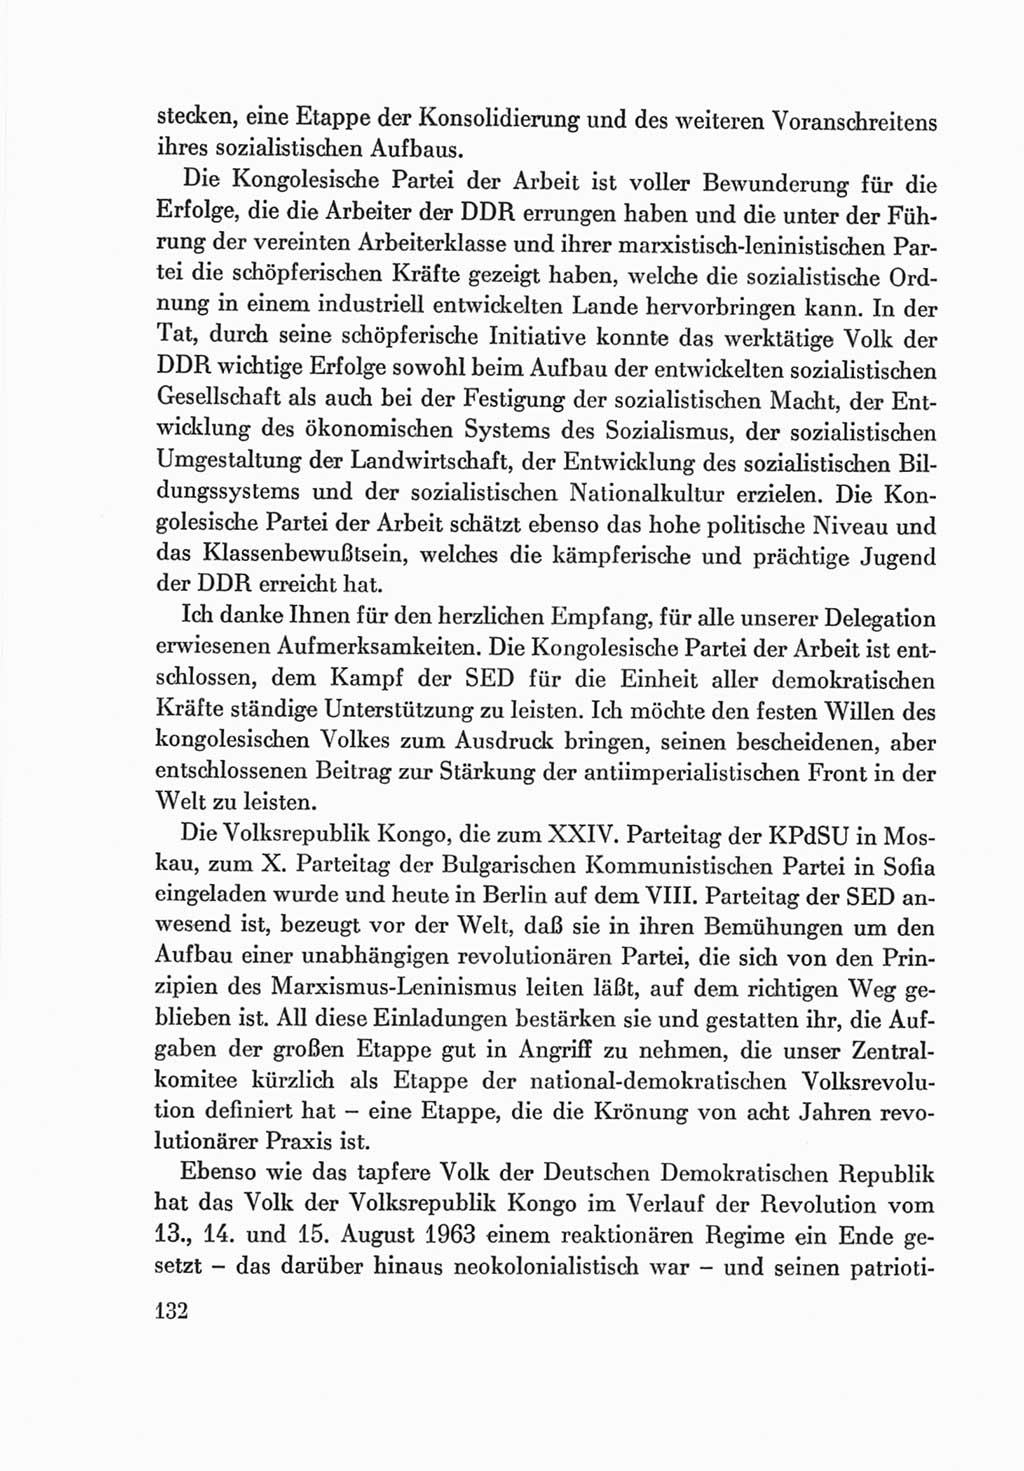 Protokoll der Verhandlungen des Ⅷ. Parteitages der Sozialistischen Einheitspartei Deutschlands (SED) [Deutsche Demokratische Republik (DDR)] 1971, Band 2, Seite 132 (Prot. Verh. Ⅷ. PT SED DDR 1971, Bd. 2, S. 132)